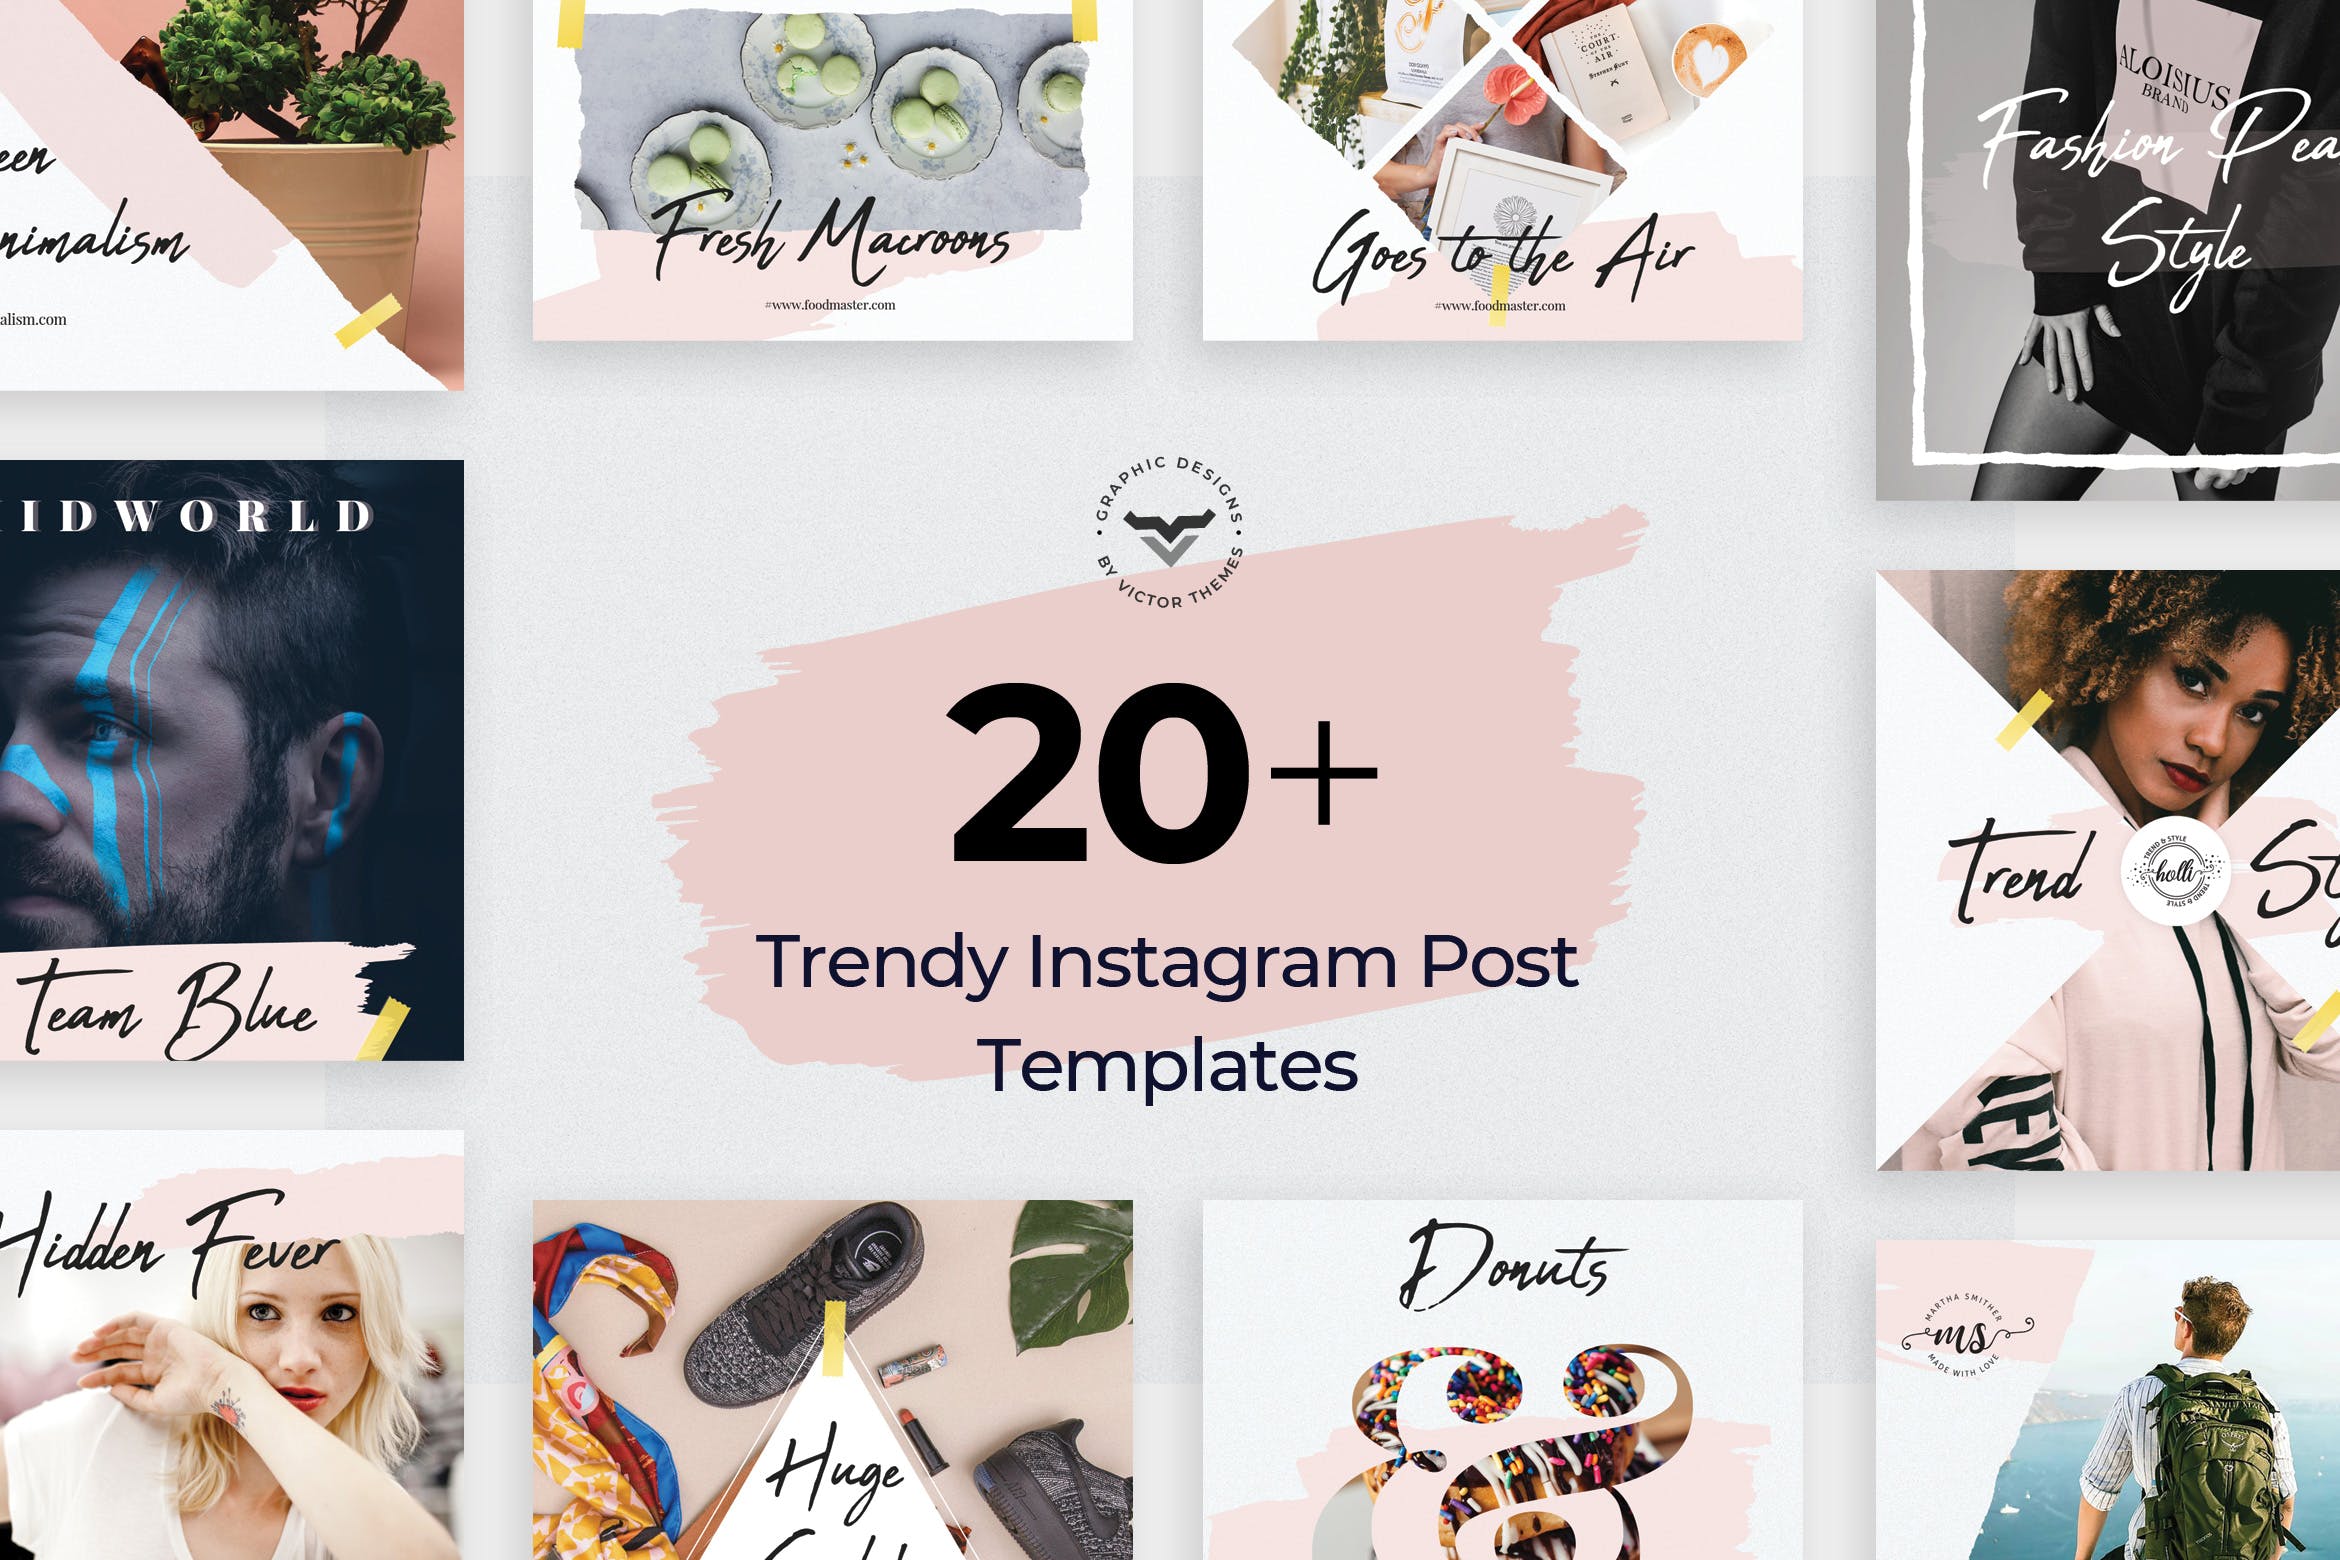 20+创意便利贴设计风格Instagram社交贴图模板16设计网精选 Instagram Post Templates插图